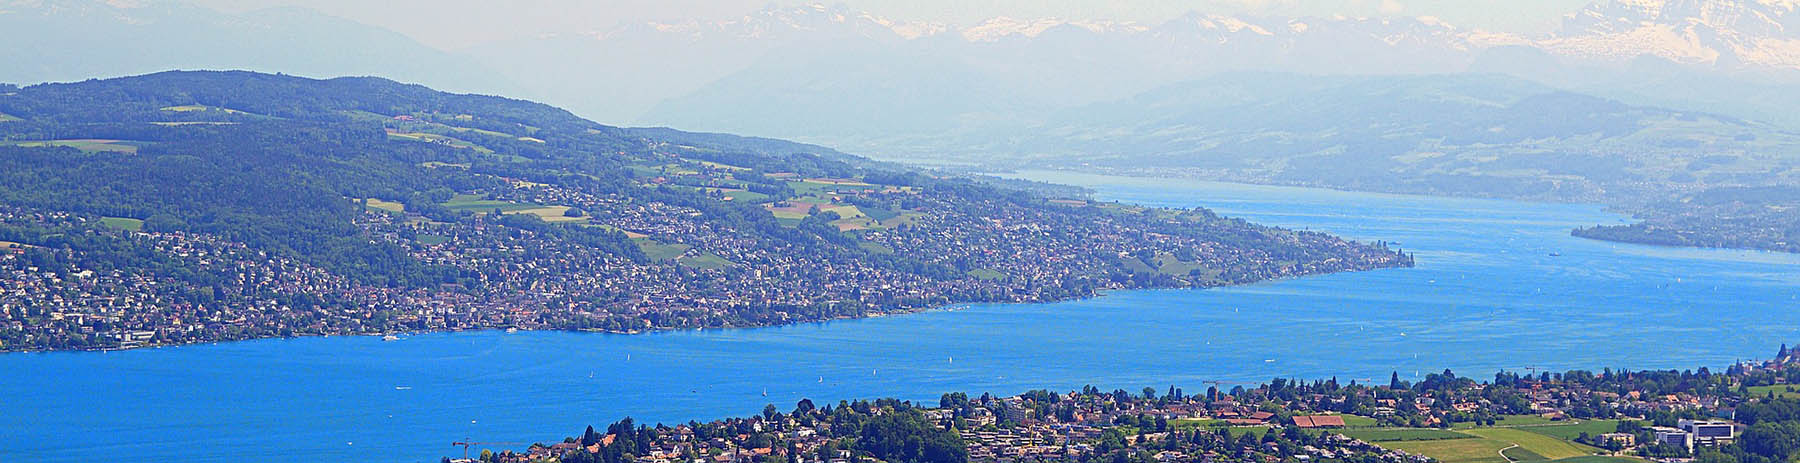 Vermieten In Der Schweiz Was Muss Versteuert Werden Aimmo